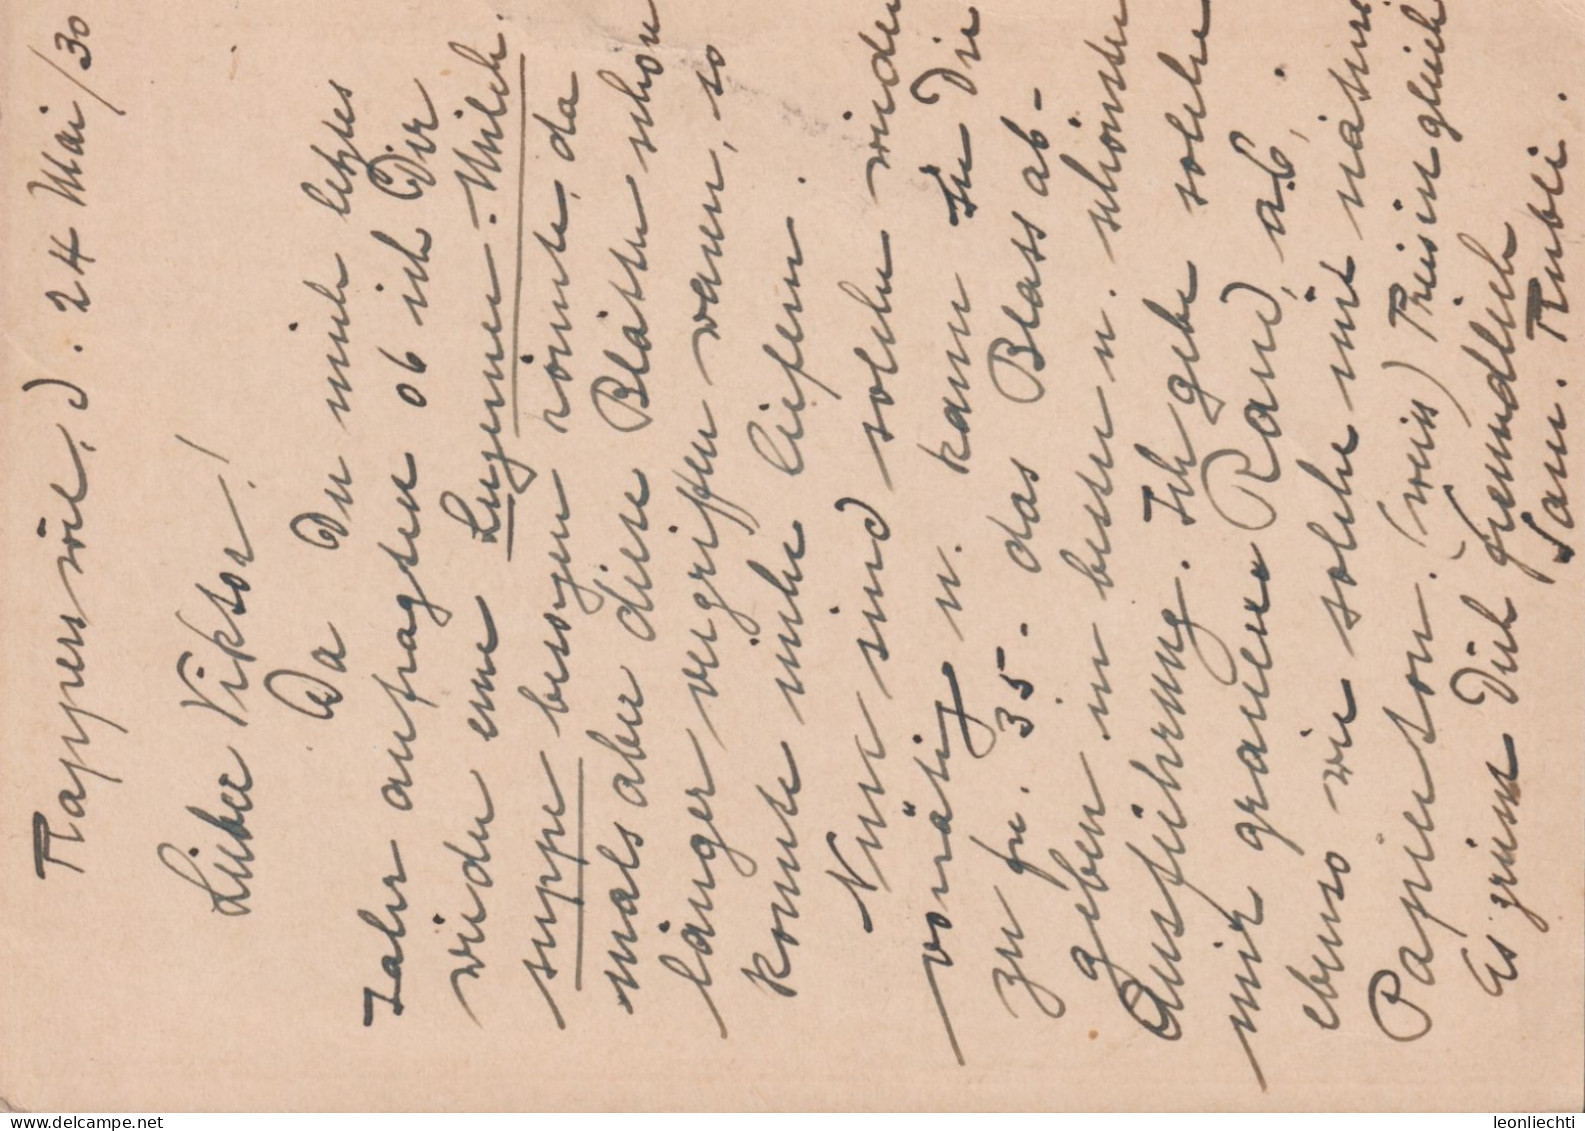 1929, Ganzsache Zum: 119-011 MONTANA-LAC-GRENON ⵙ RAPPERSWIL 24.V.30 - Enteros Postales